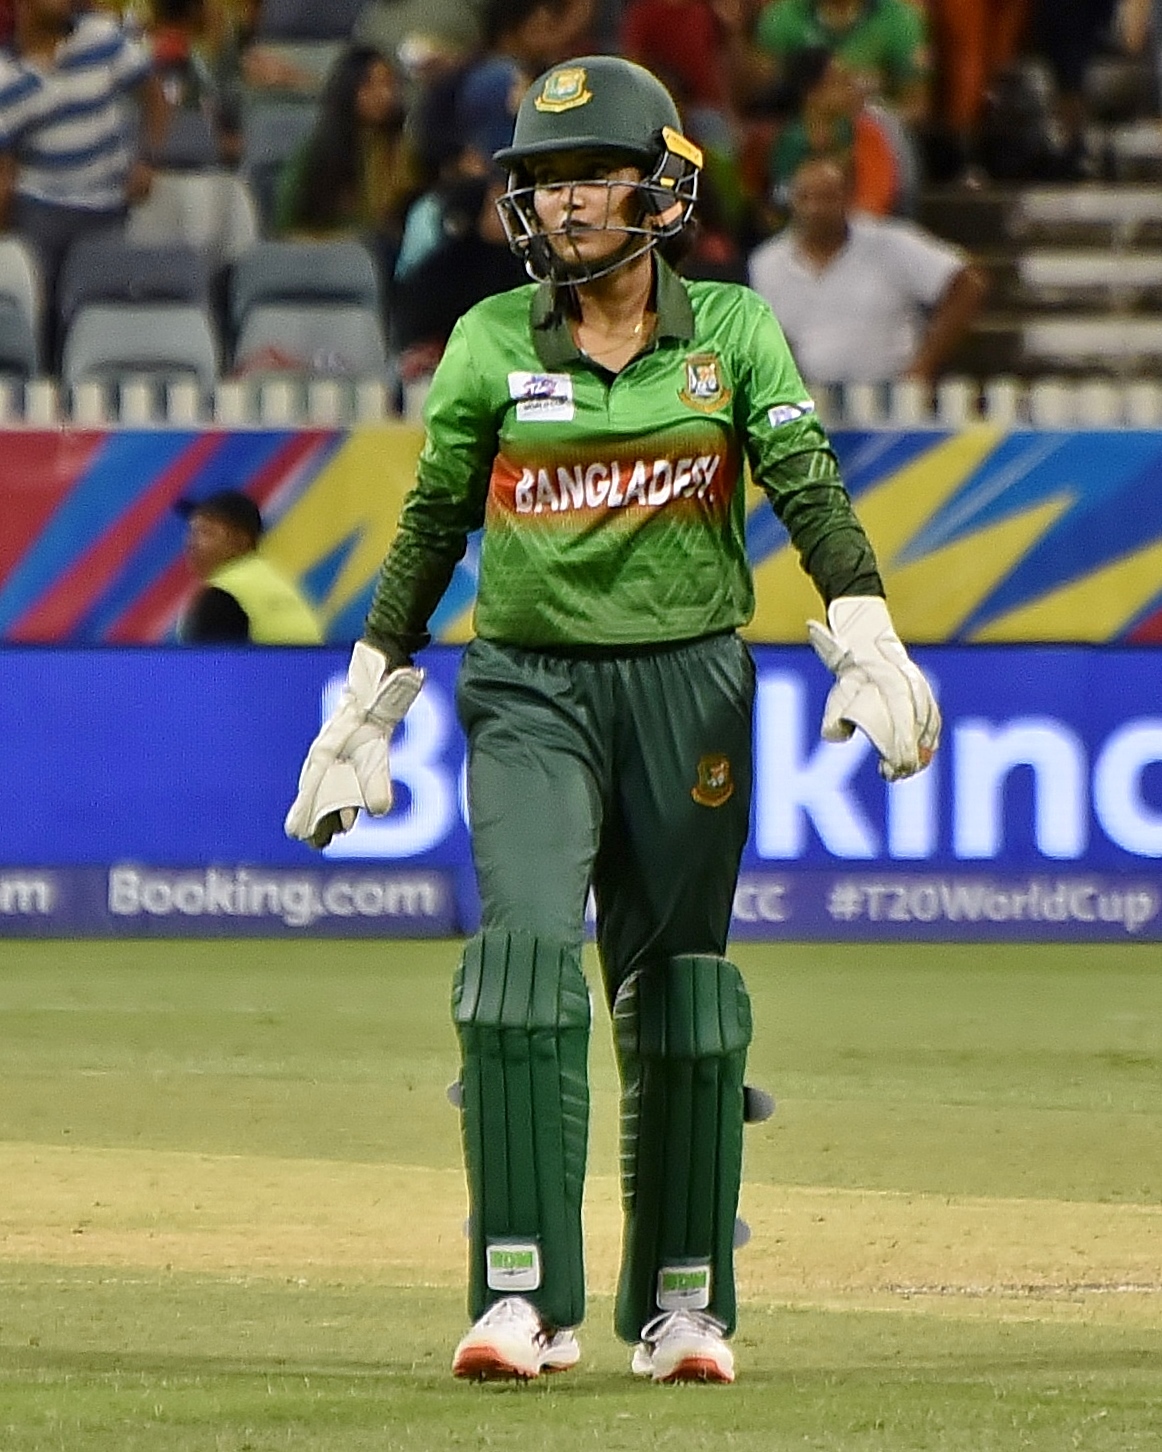 Nigar Sultana (cricketer)